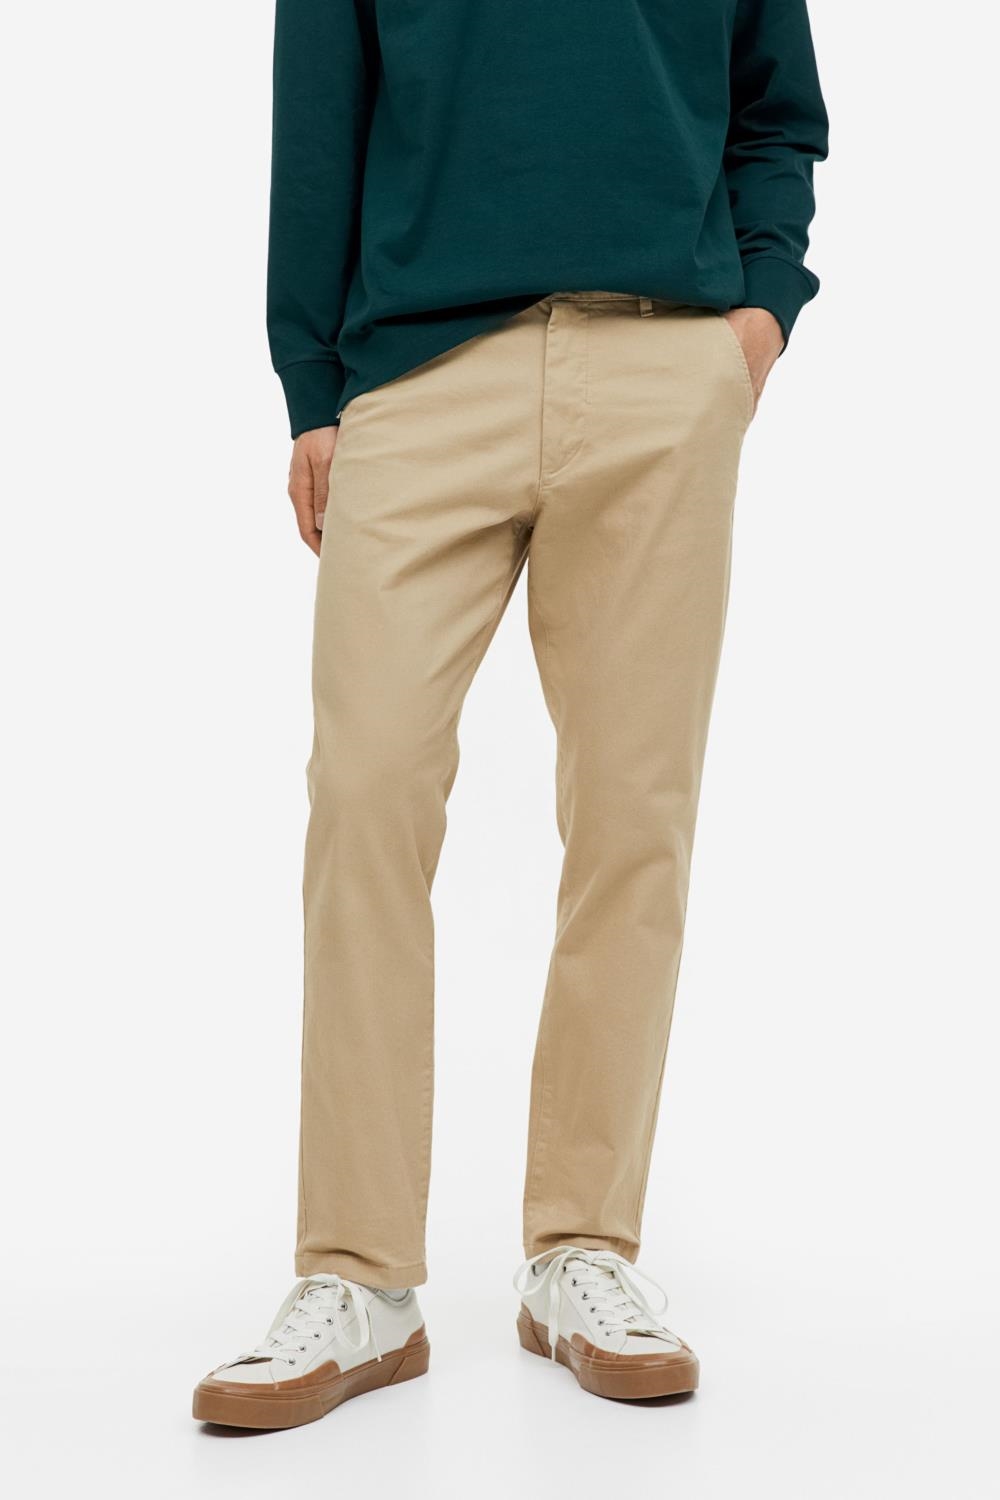 С чем носят брюки чинос голливудские звезды? Стильные образы Райана Рейнольдса.